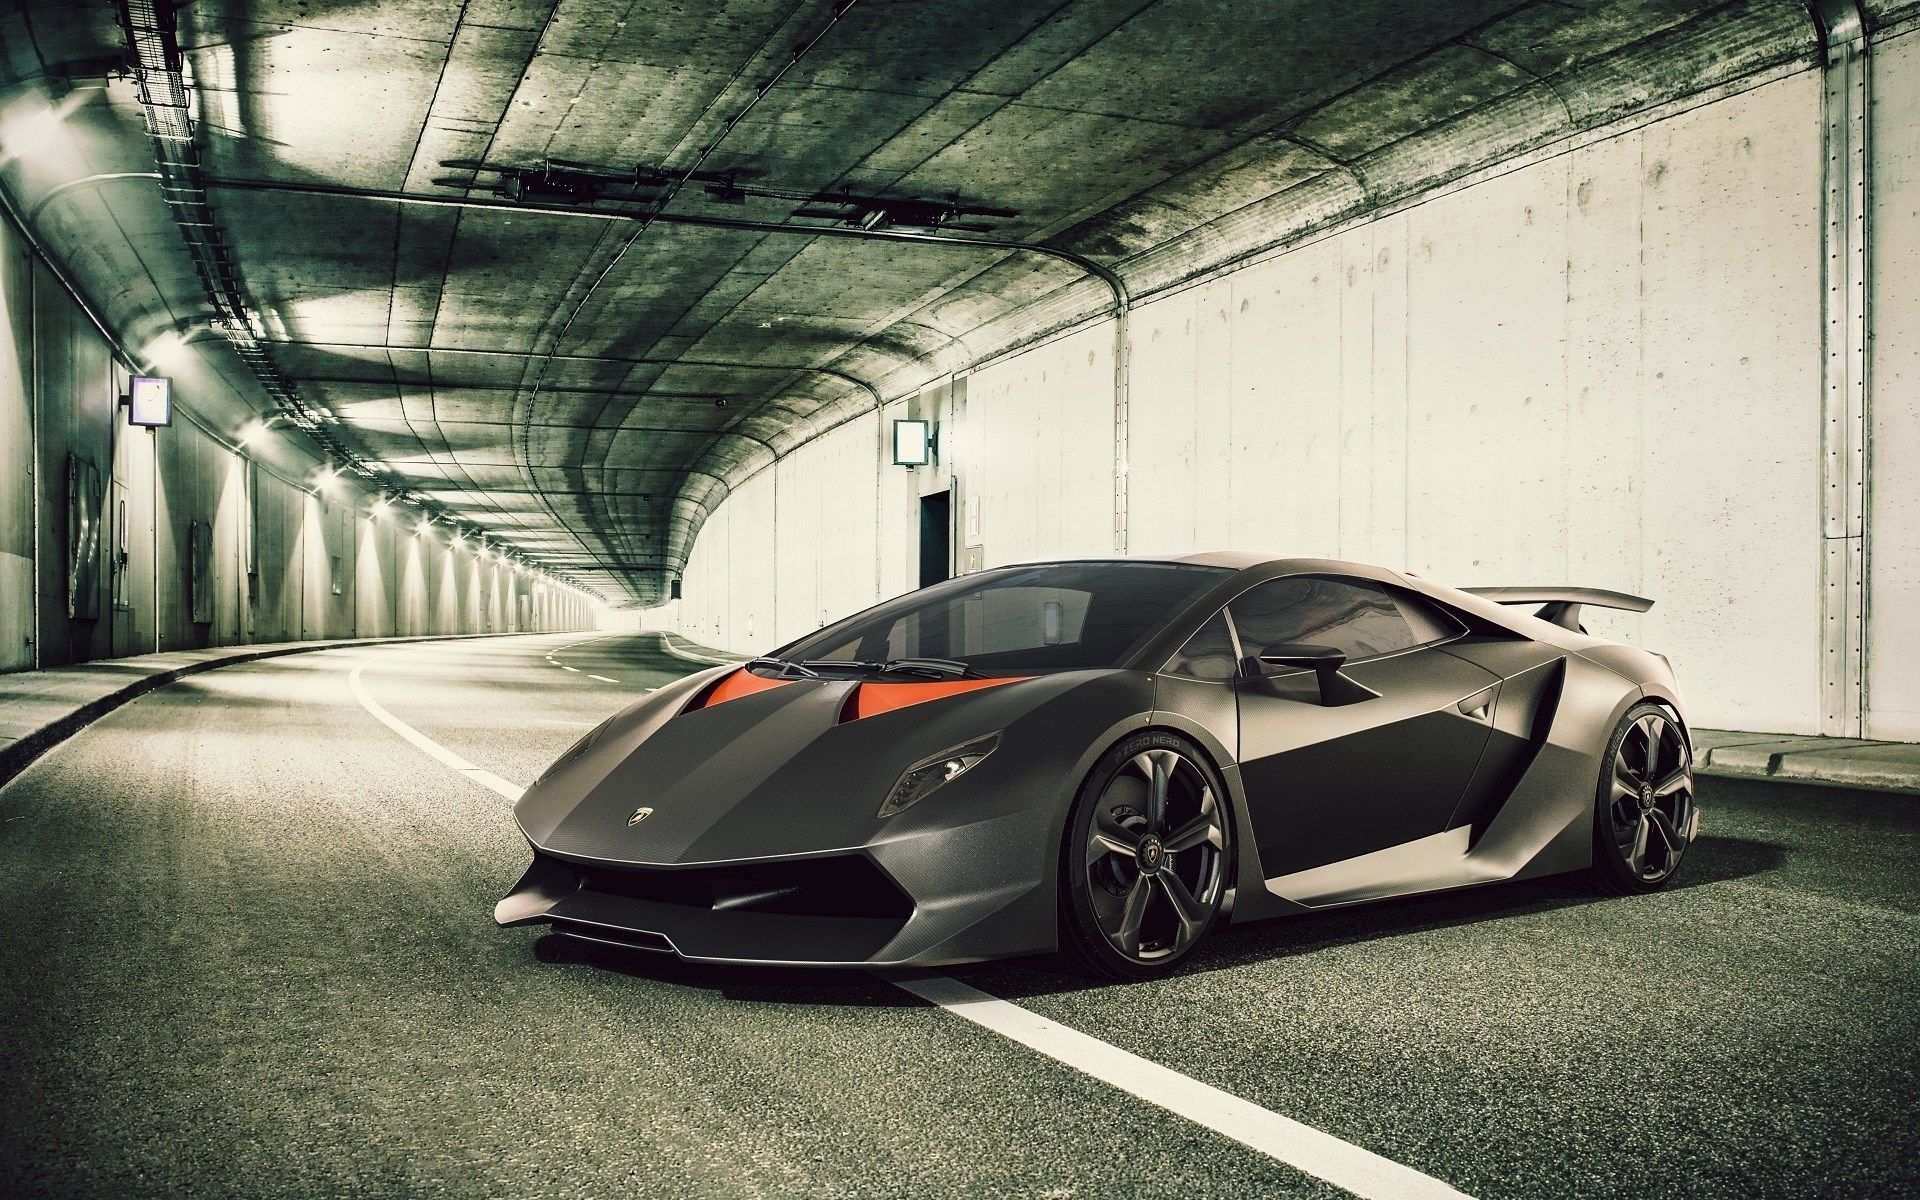 Lamborghini Sesto Elemento Front Quarter View In tunnel